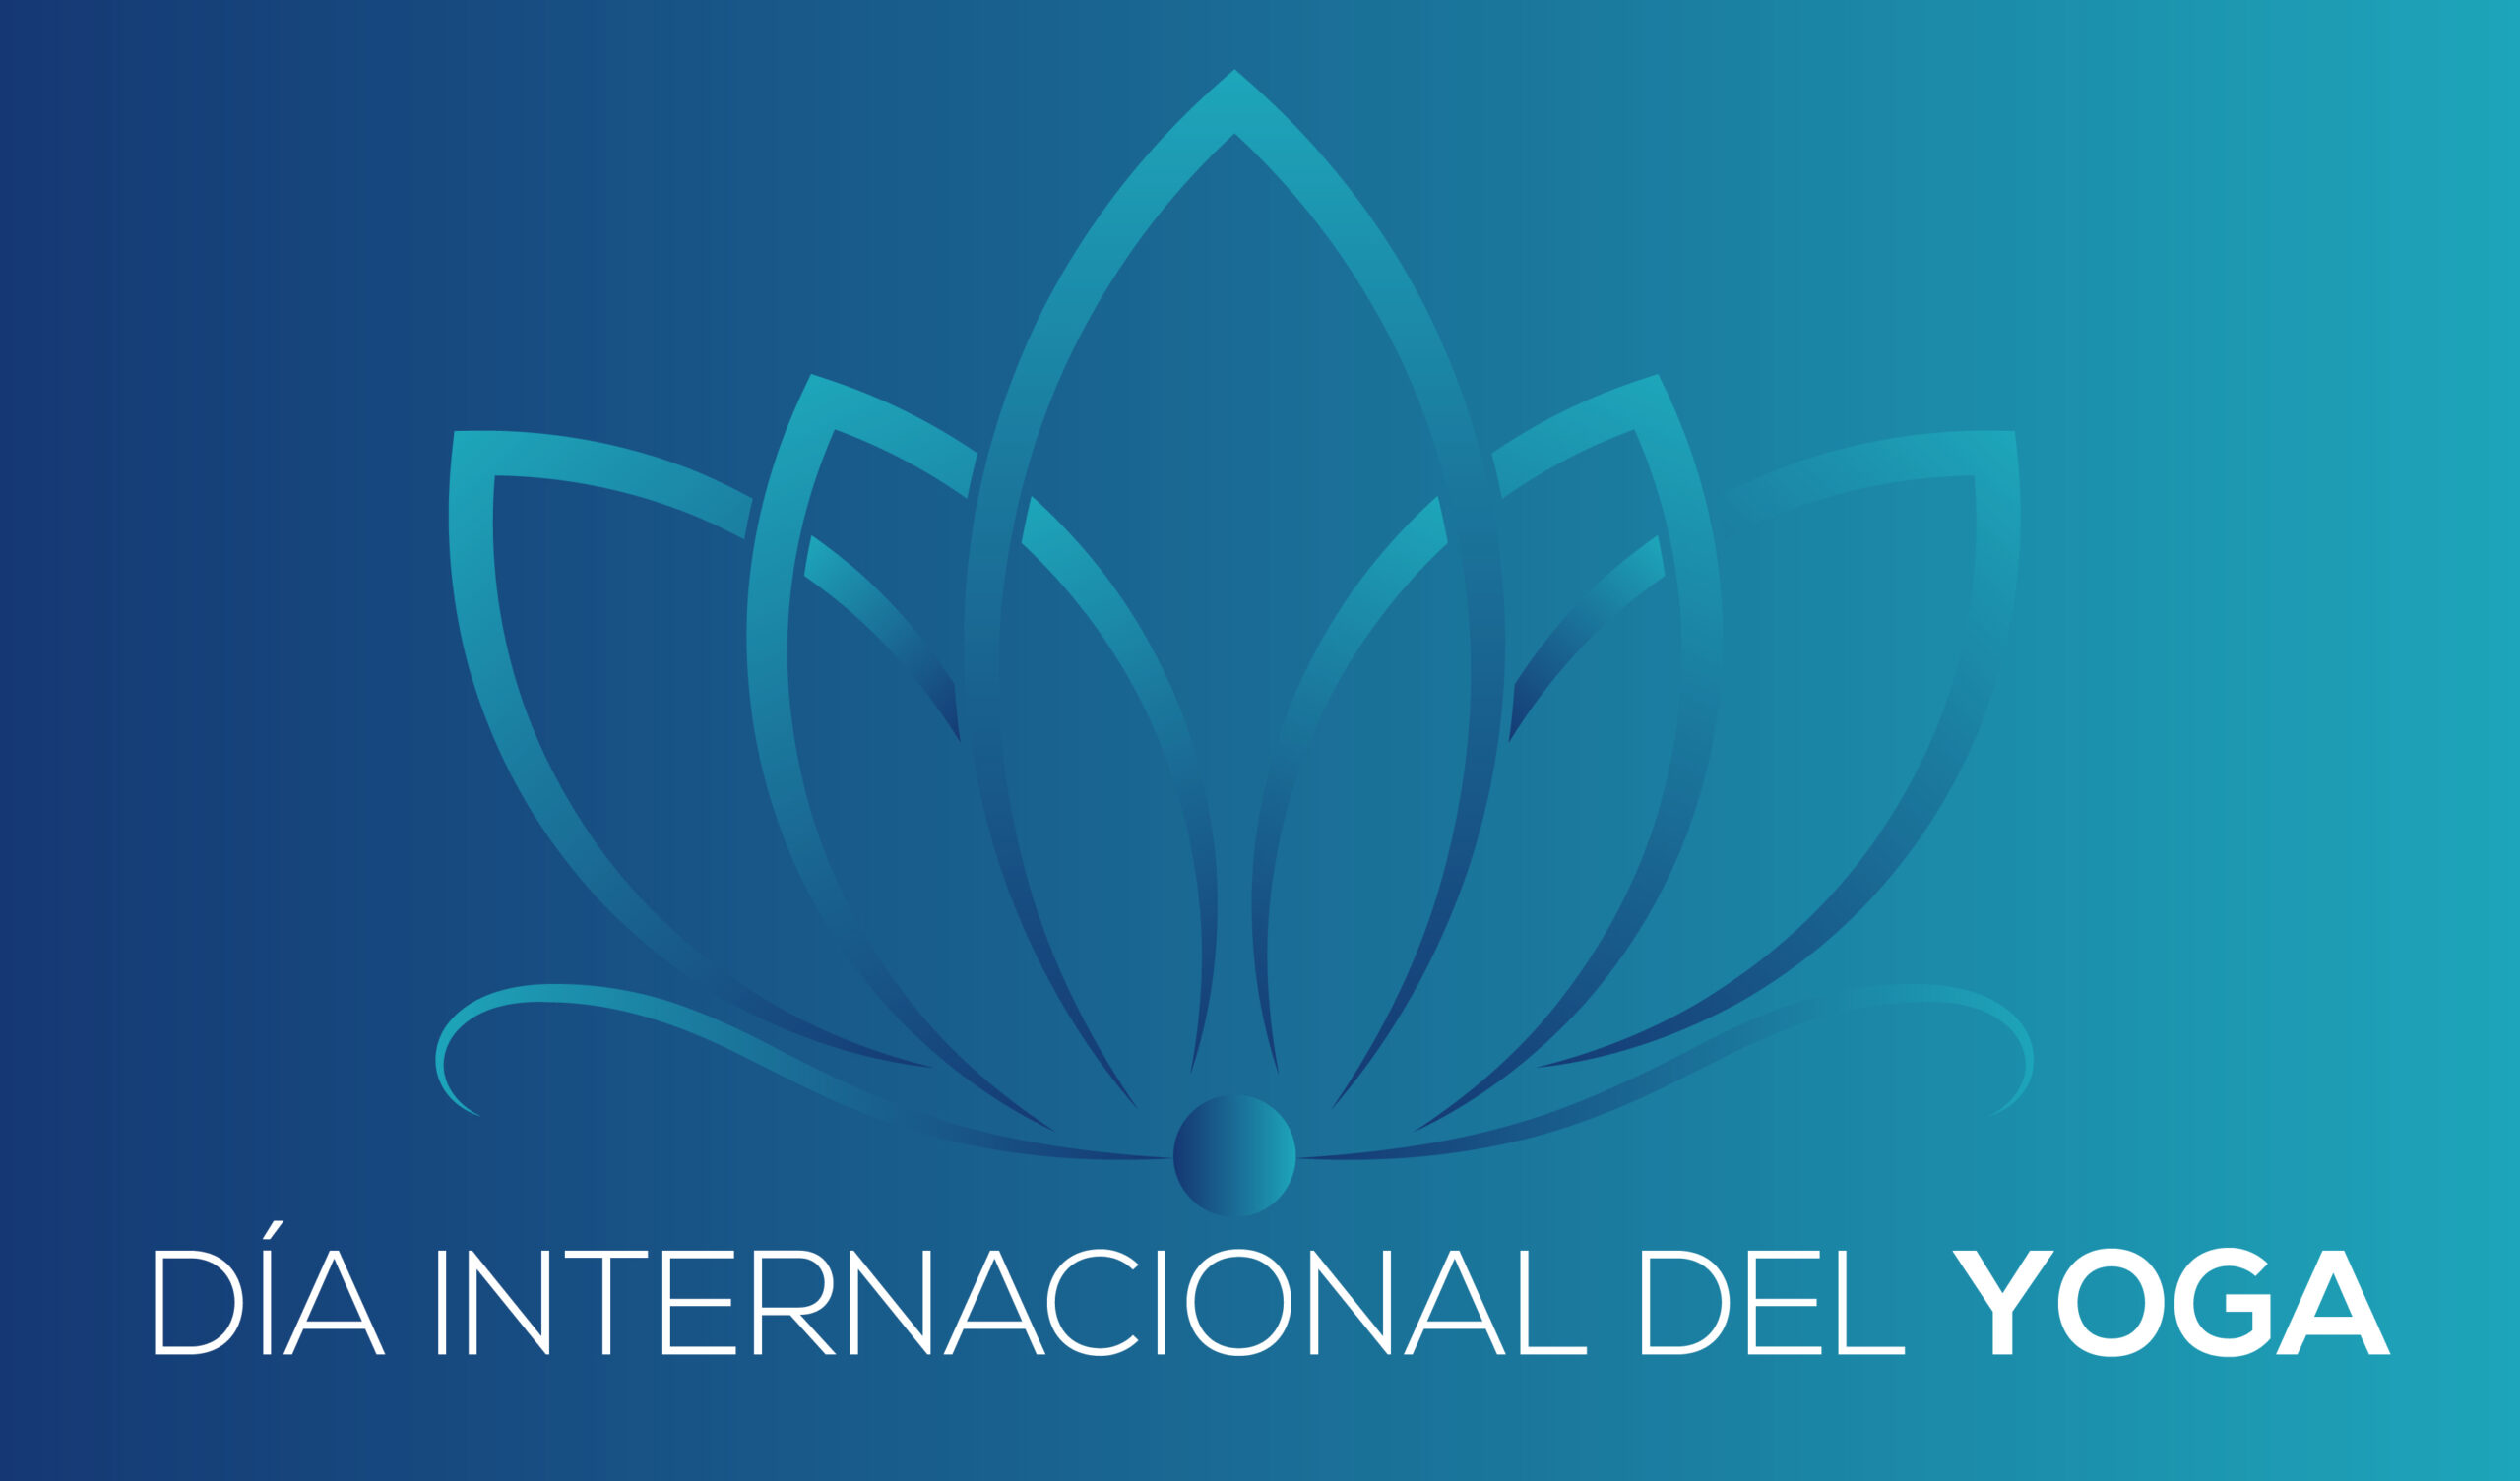 21 de junio: Día Internacional del Yoga, una disciplina para ganar calidad de vida